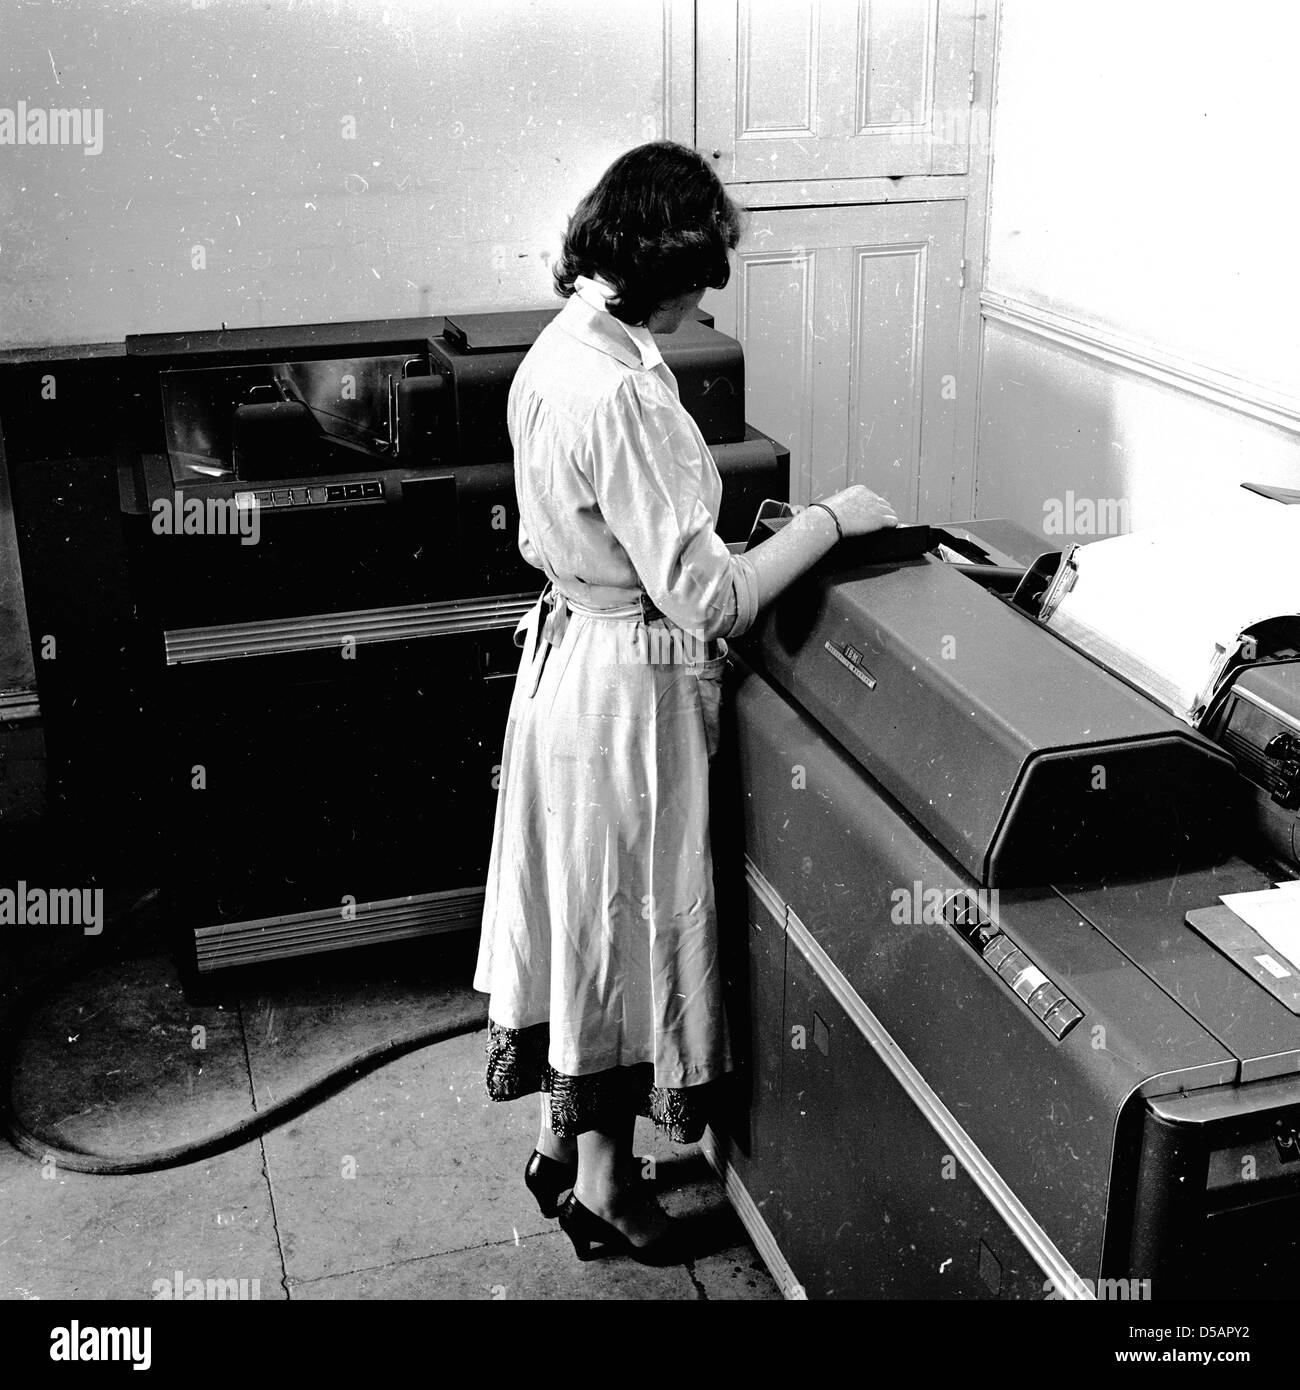 Historisches Bild aus den späten 1950er Jahren einer Frau, die in einem Büro mit einem Stück Rechnungswesen der Zeit, einem großen Datenprozessor und einer Druckmaschine arbeitet. Bekannt als "Tabulatoren", lasen sie Kartendecks und druckten ausgewählte Teile ihres Inhalts, addieren auch Zahlenkolonnen und drucken Summen. Komplexe und umständliche Maschinen, werden sie als die Vorläufer der frühen Computer. Stockfoto